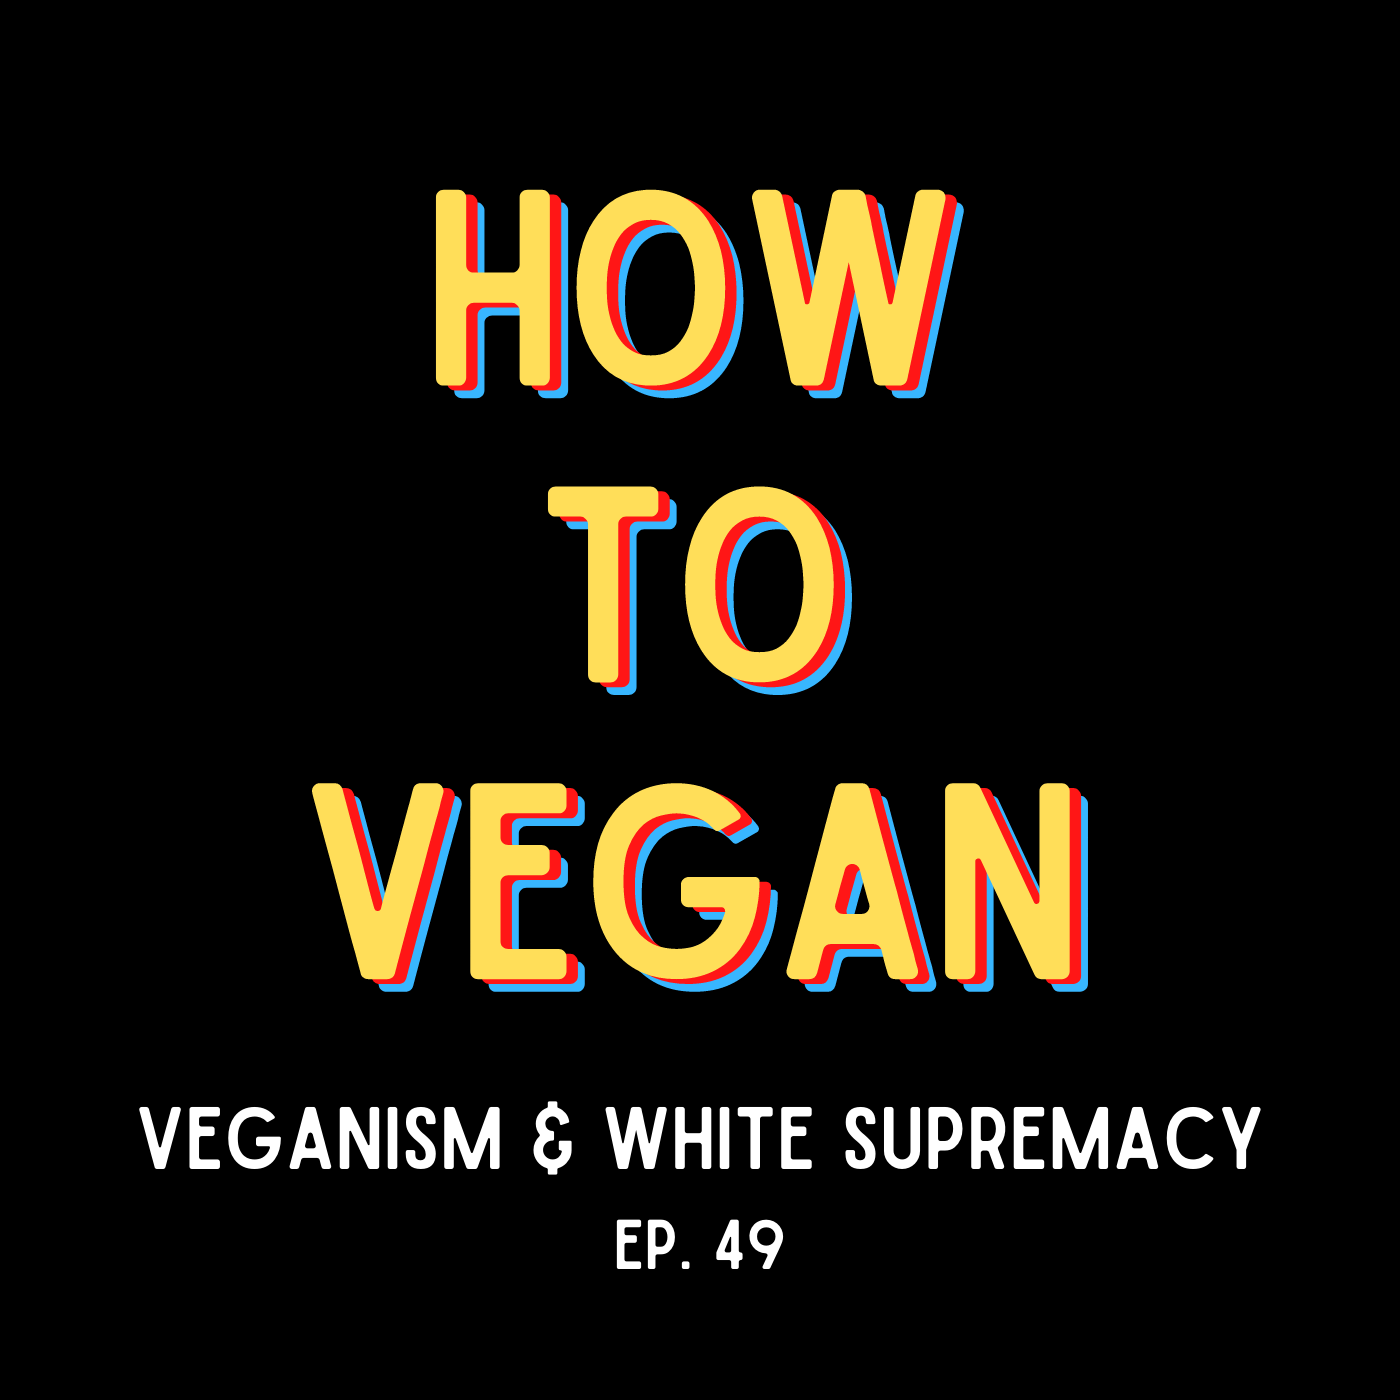 Veganism and White Supremacy